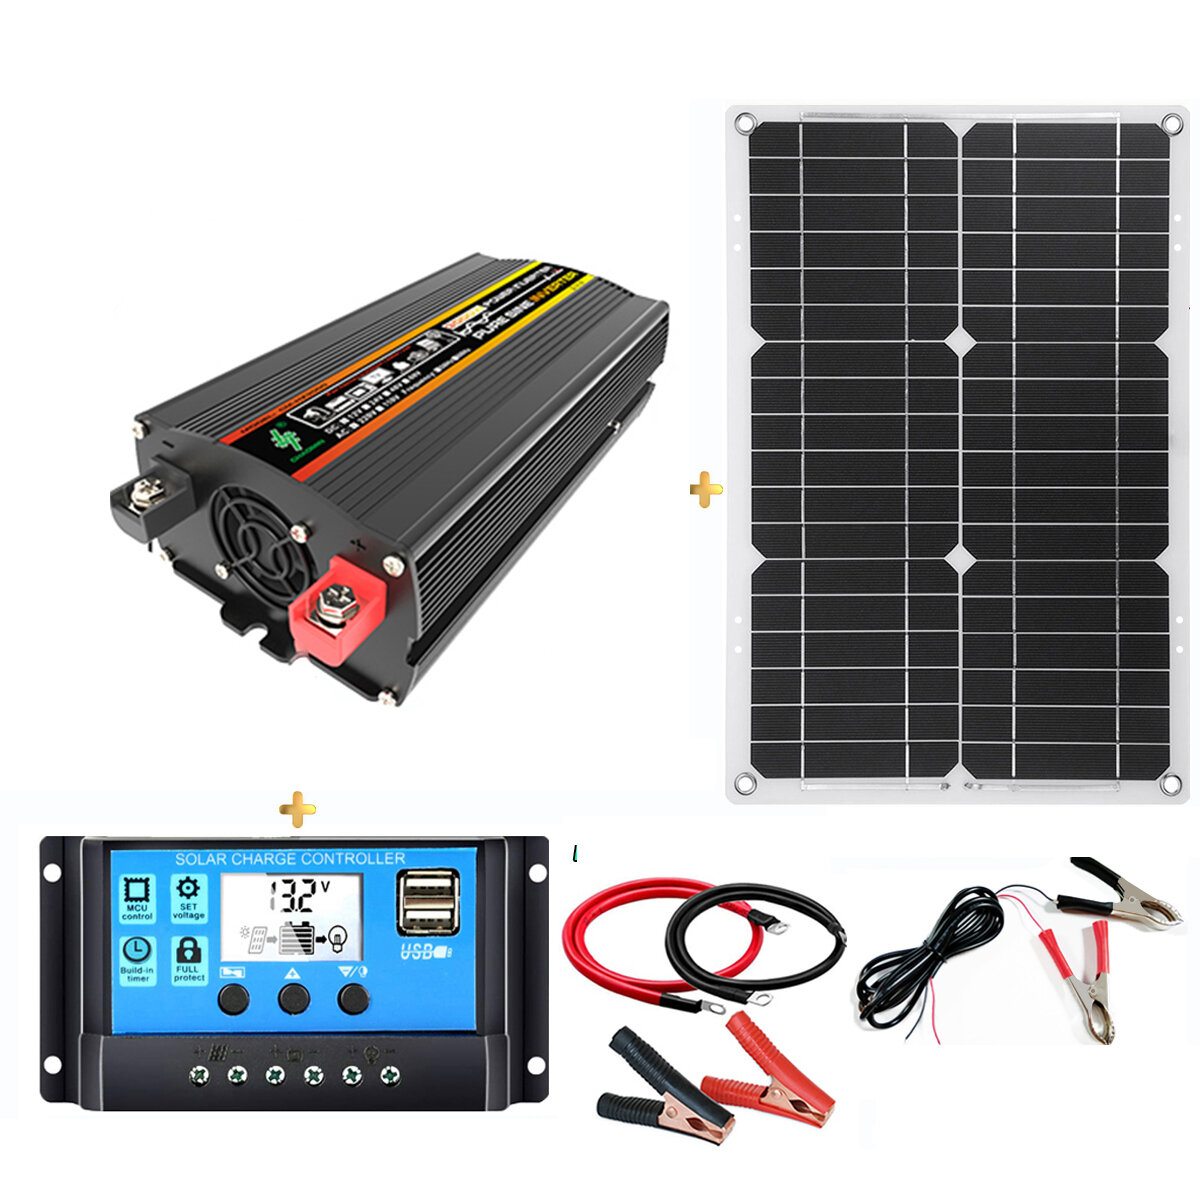 Kit inverter solare da 8000W Sistema di alimentazione solare con pannello solare da 18W Regolatore solare da 30A per campeggio, viaggi in RV, caccia e pesca